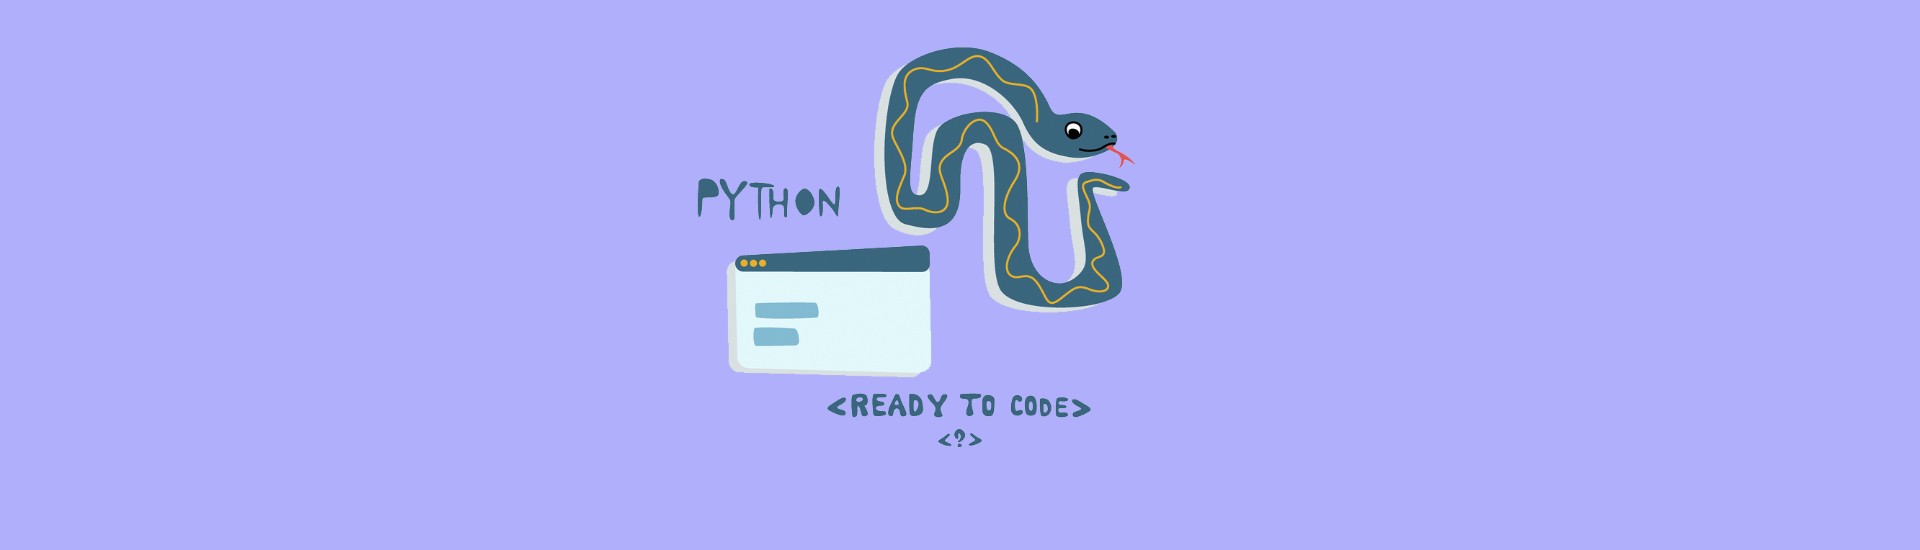 Как сделать говорящую программу на Python самостоятельно